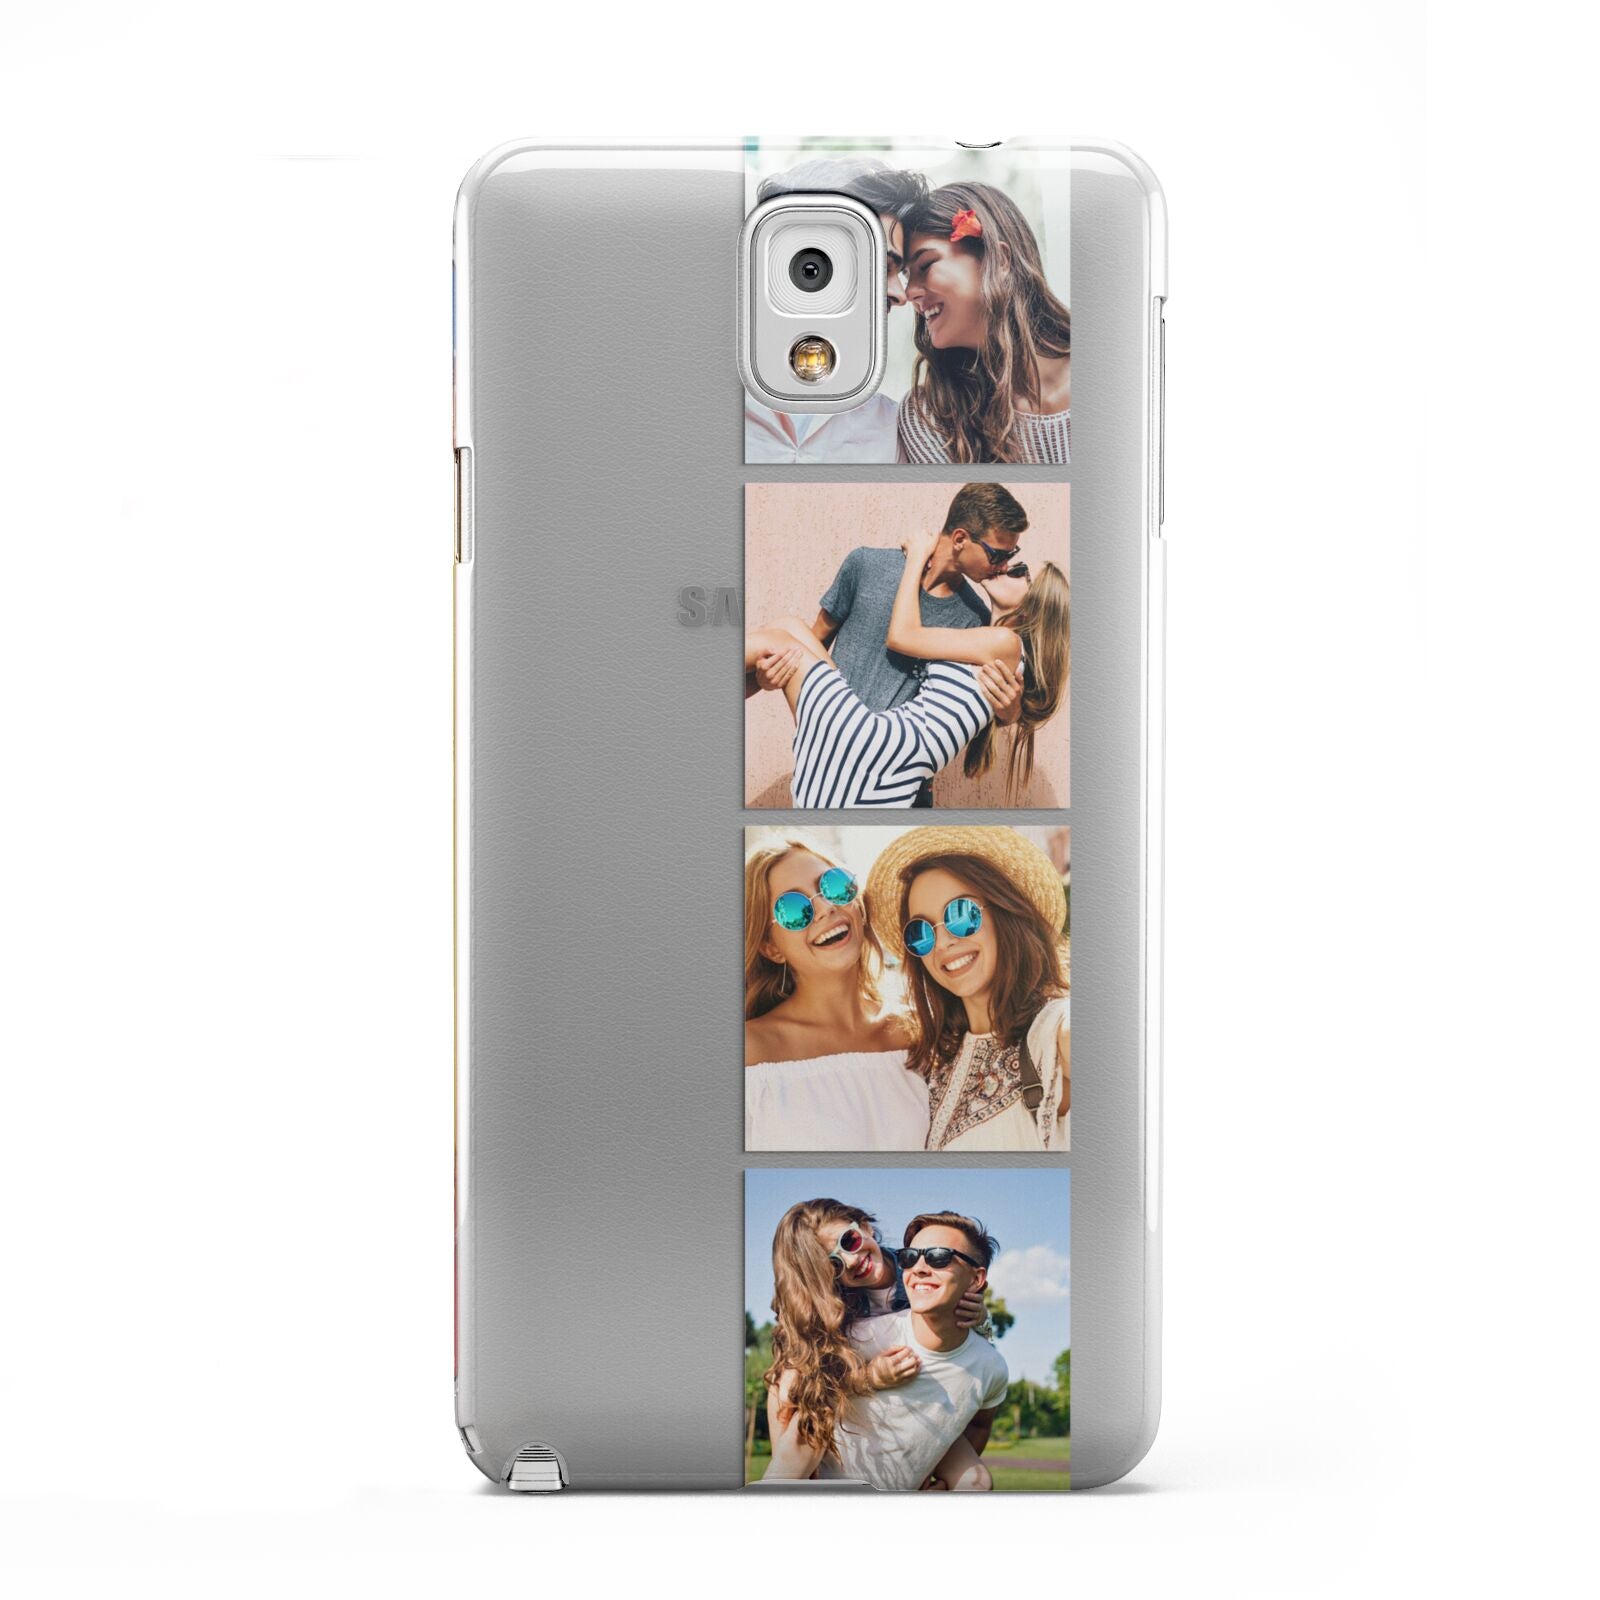 Photo Strip Montage Upload Samsung Galaxy Note 3 Case